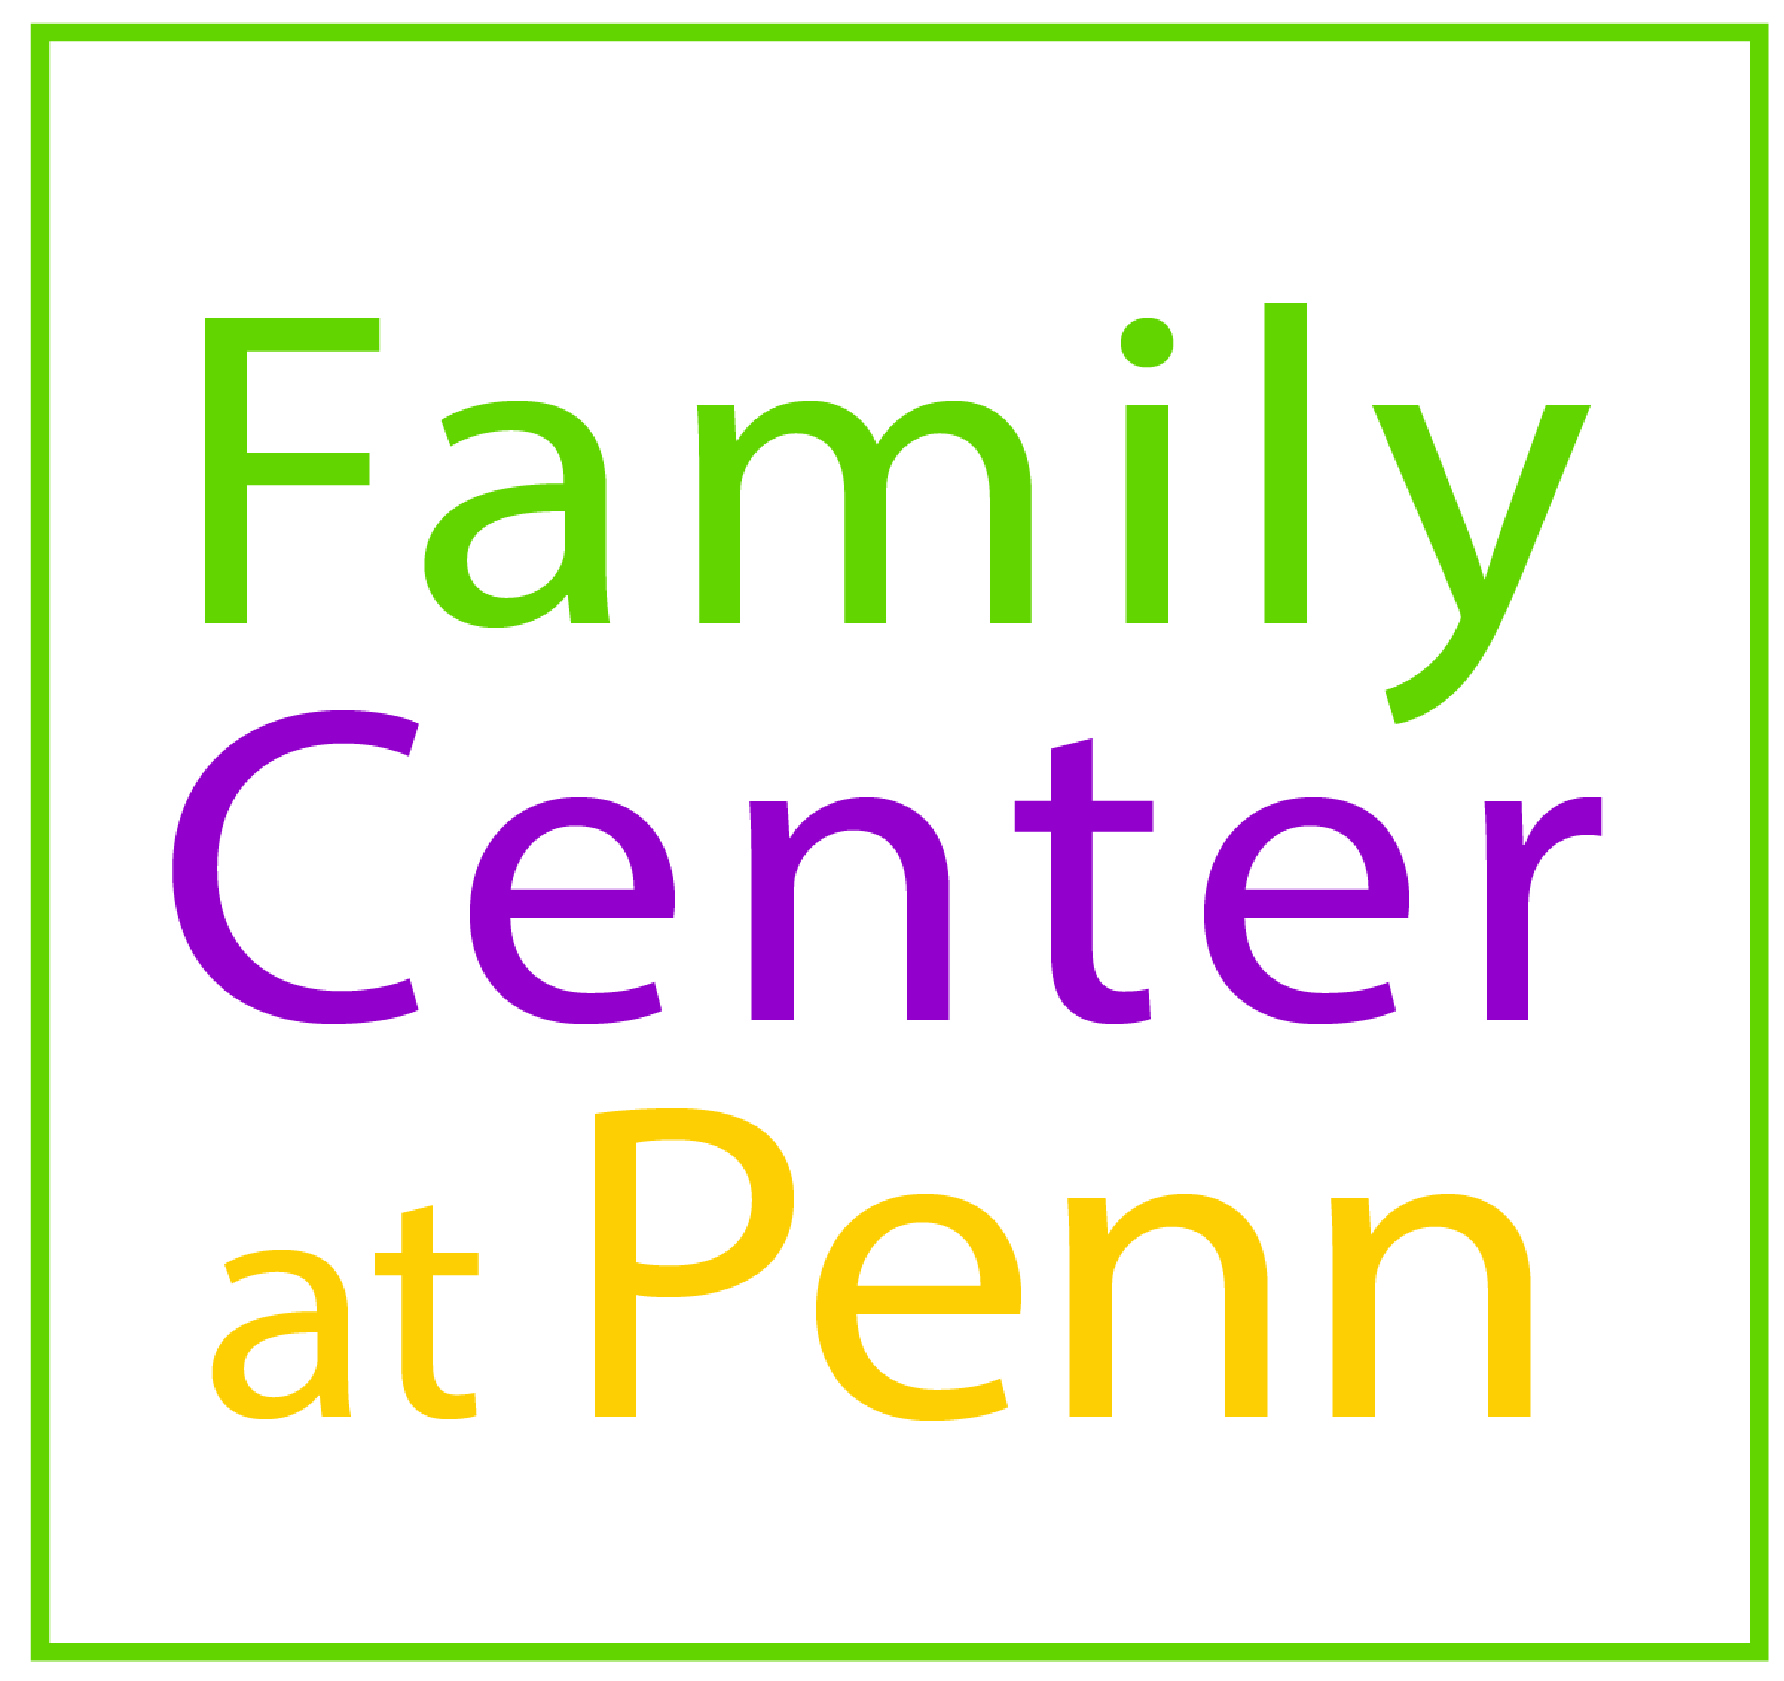 Family Center logo